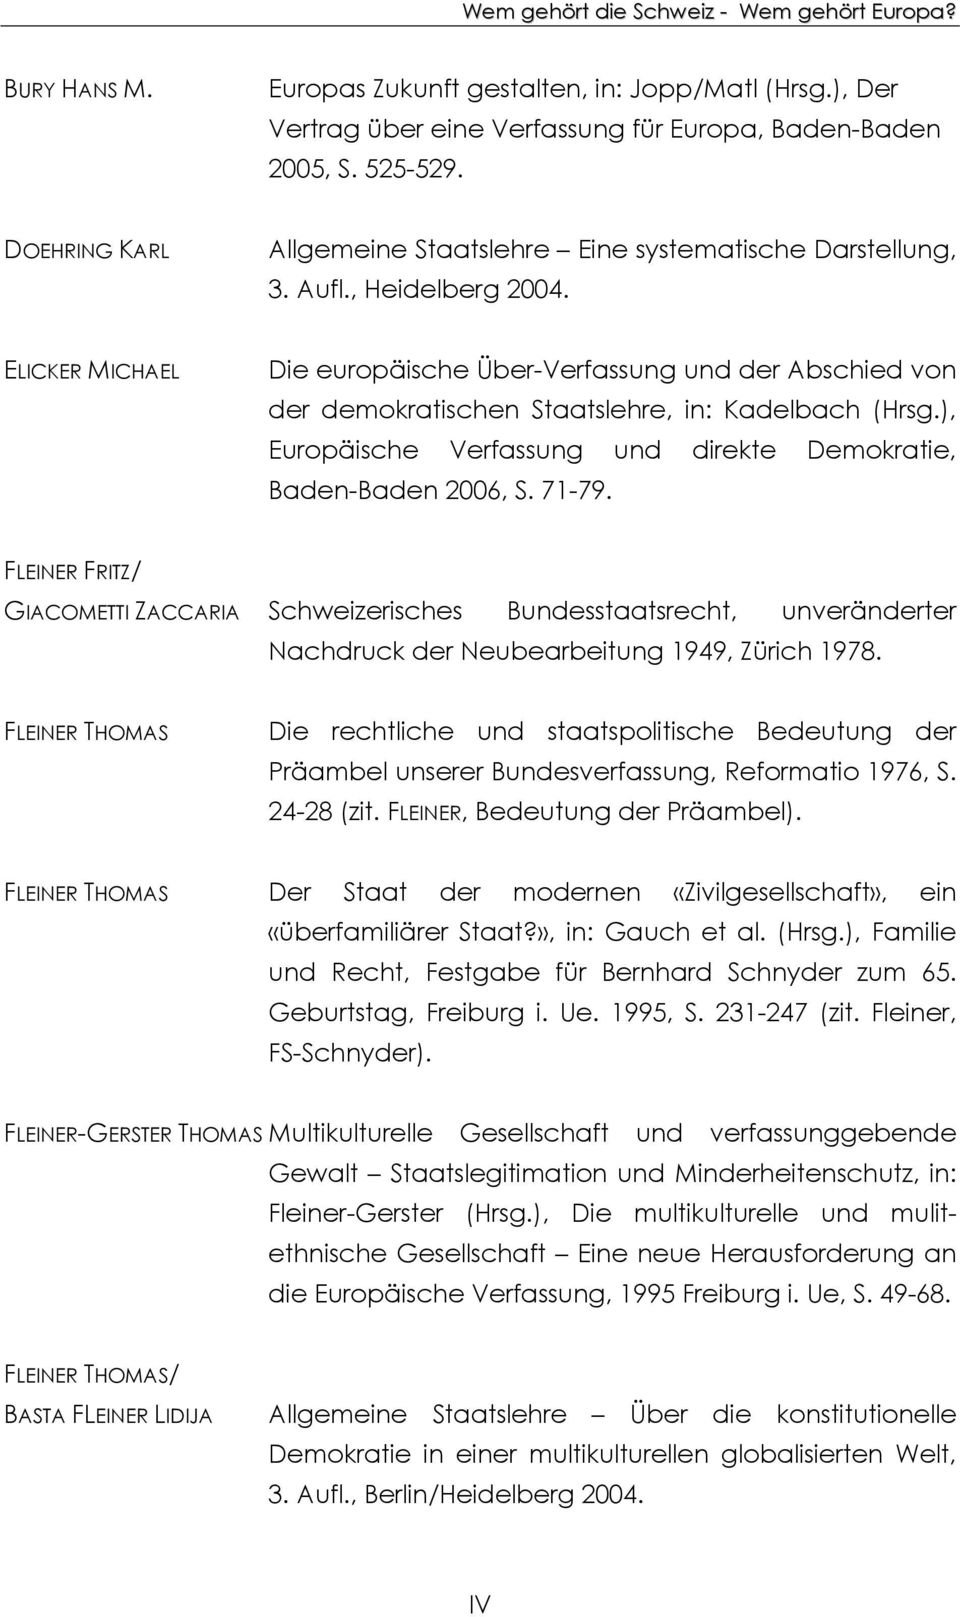 ELICKER MICHAEL Die europäische Über-Verfassung und der Abschied von der demokratischen Staatslehre, in: Kadelbach (Hrsg.), Europäische Verfassung und direkte Demokratie, Baden-Baden 2006, S. 71-79.